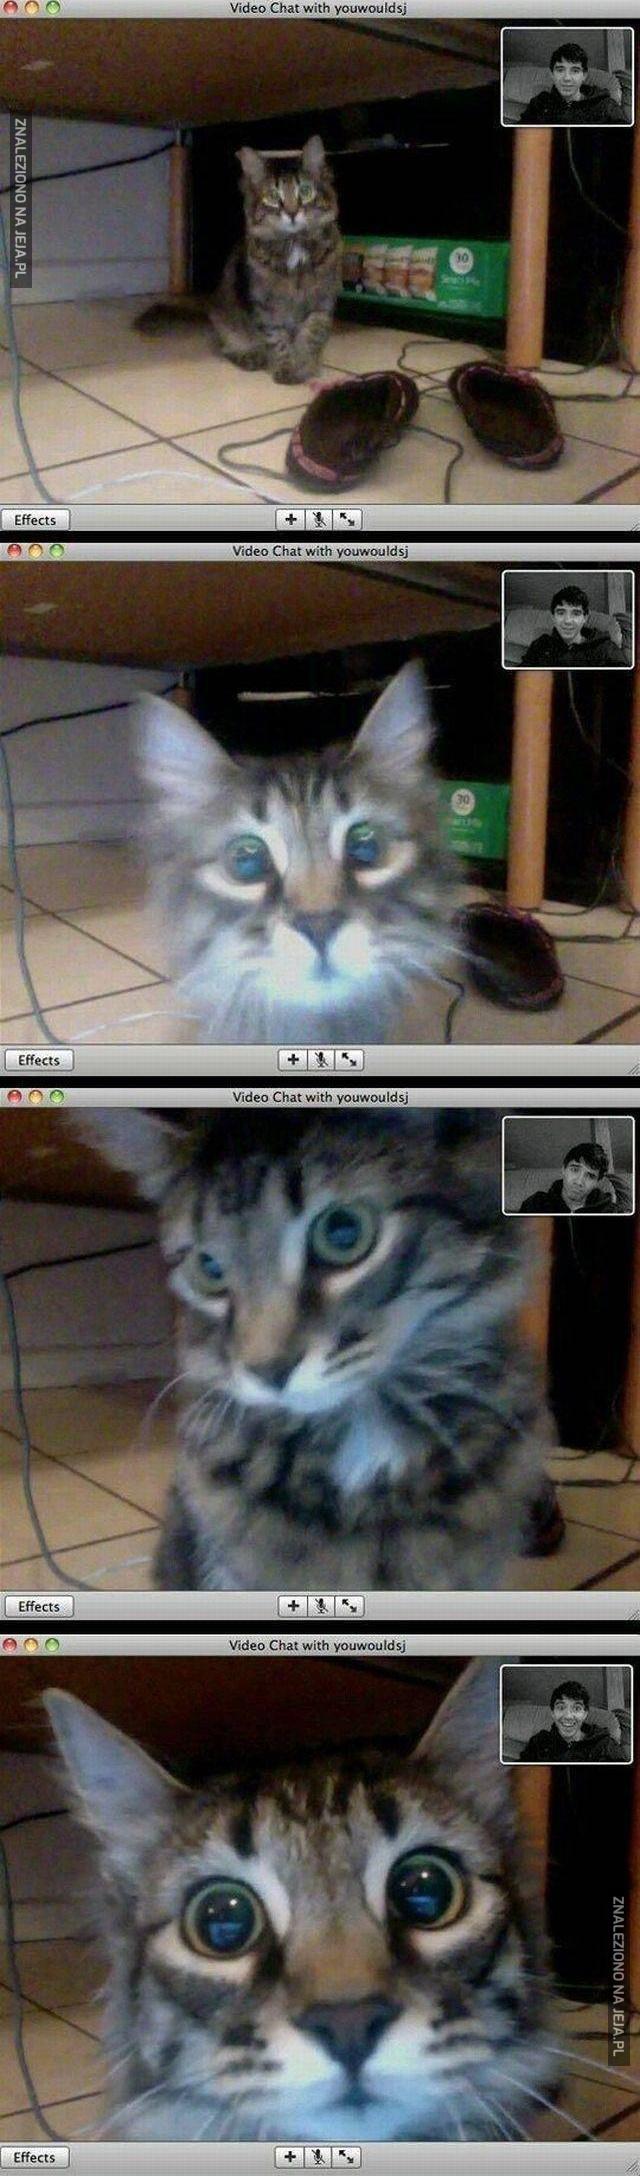 Kot rozpoznaje właściciela podczas video rozmowy